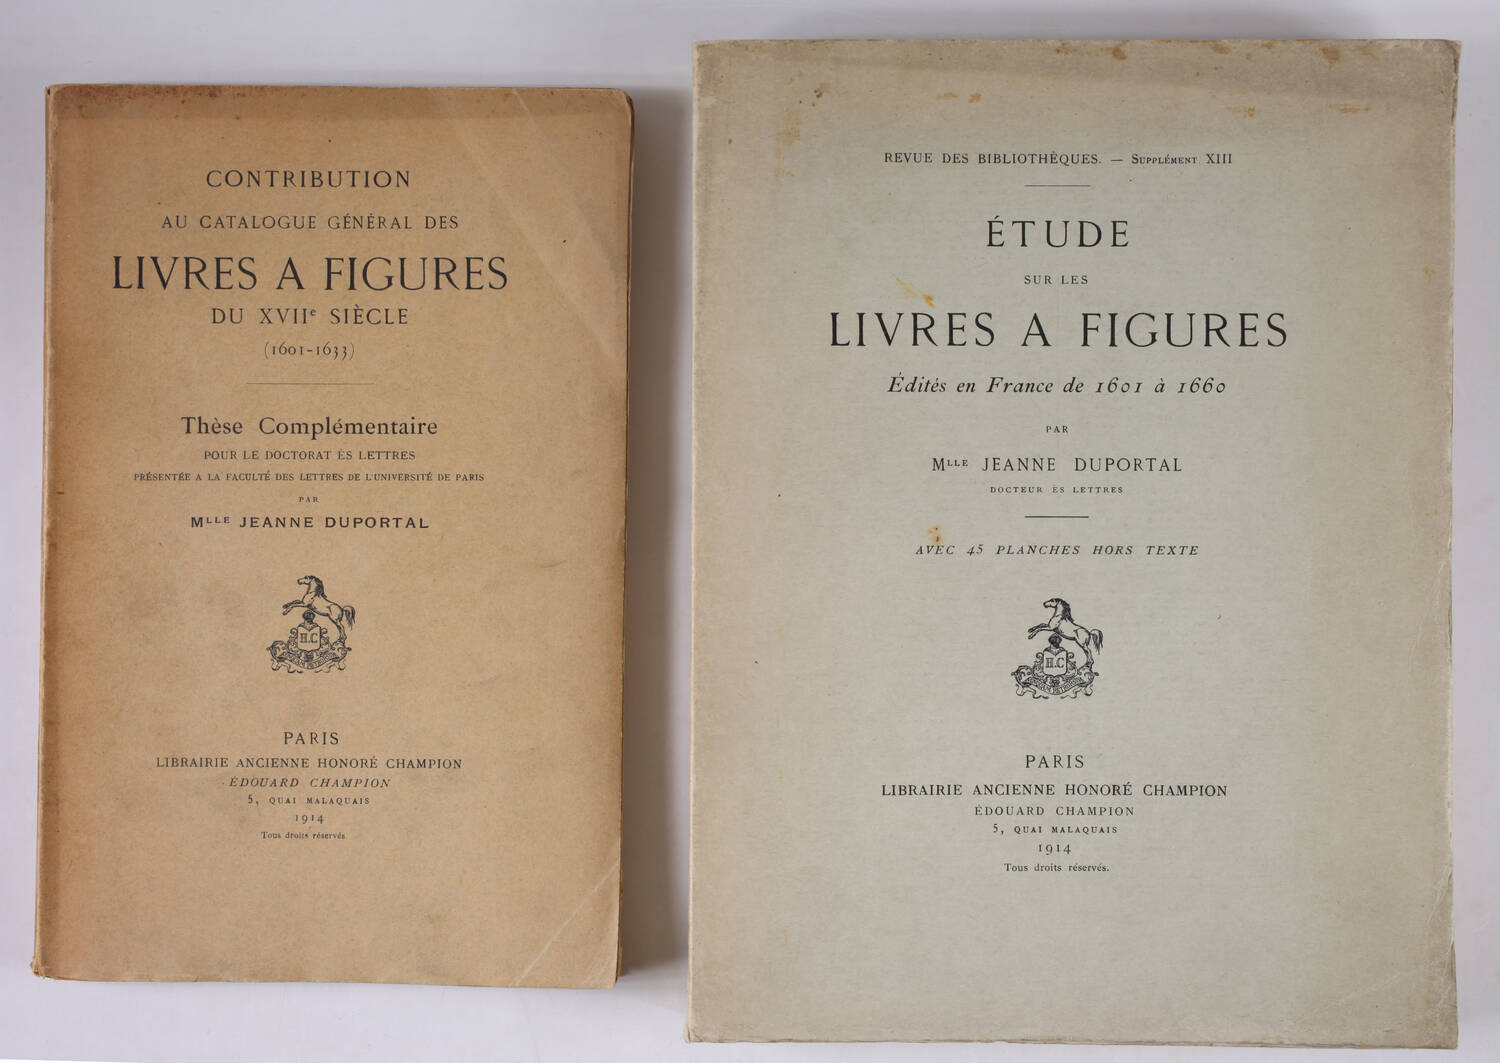 DUPORTAL - Livres à figures, 1601 à 1660 + Thèse complémentaire 1601-1633 - 1914 - Photo 0, livre rare du XXe siècle